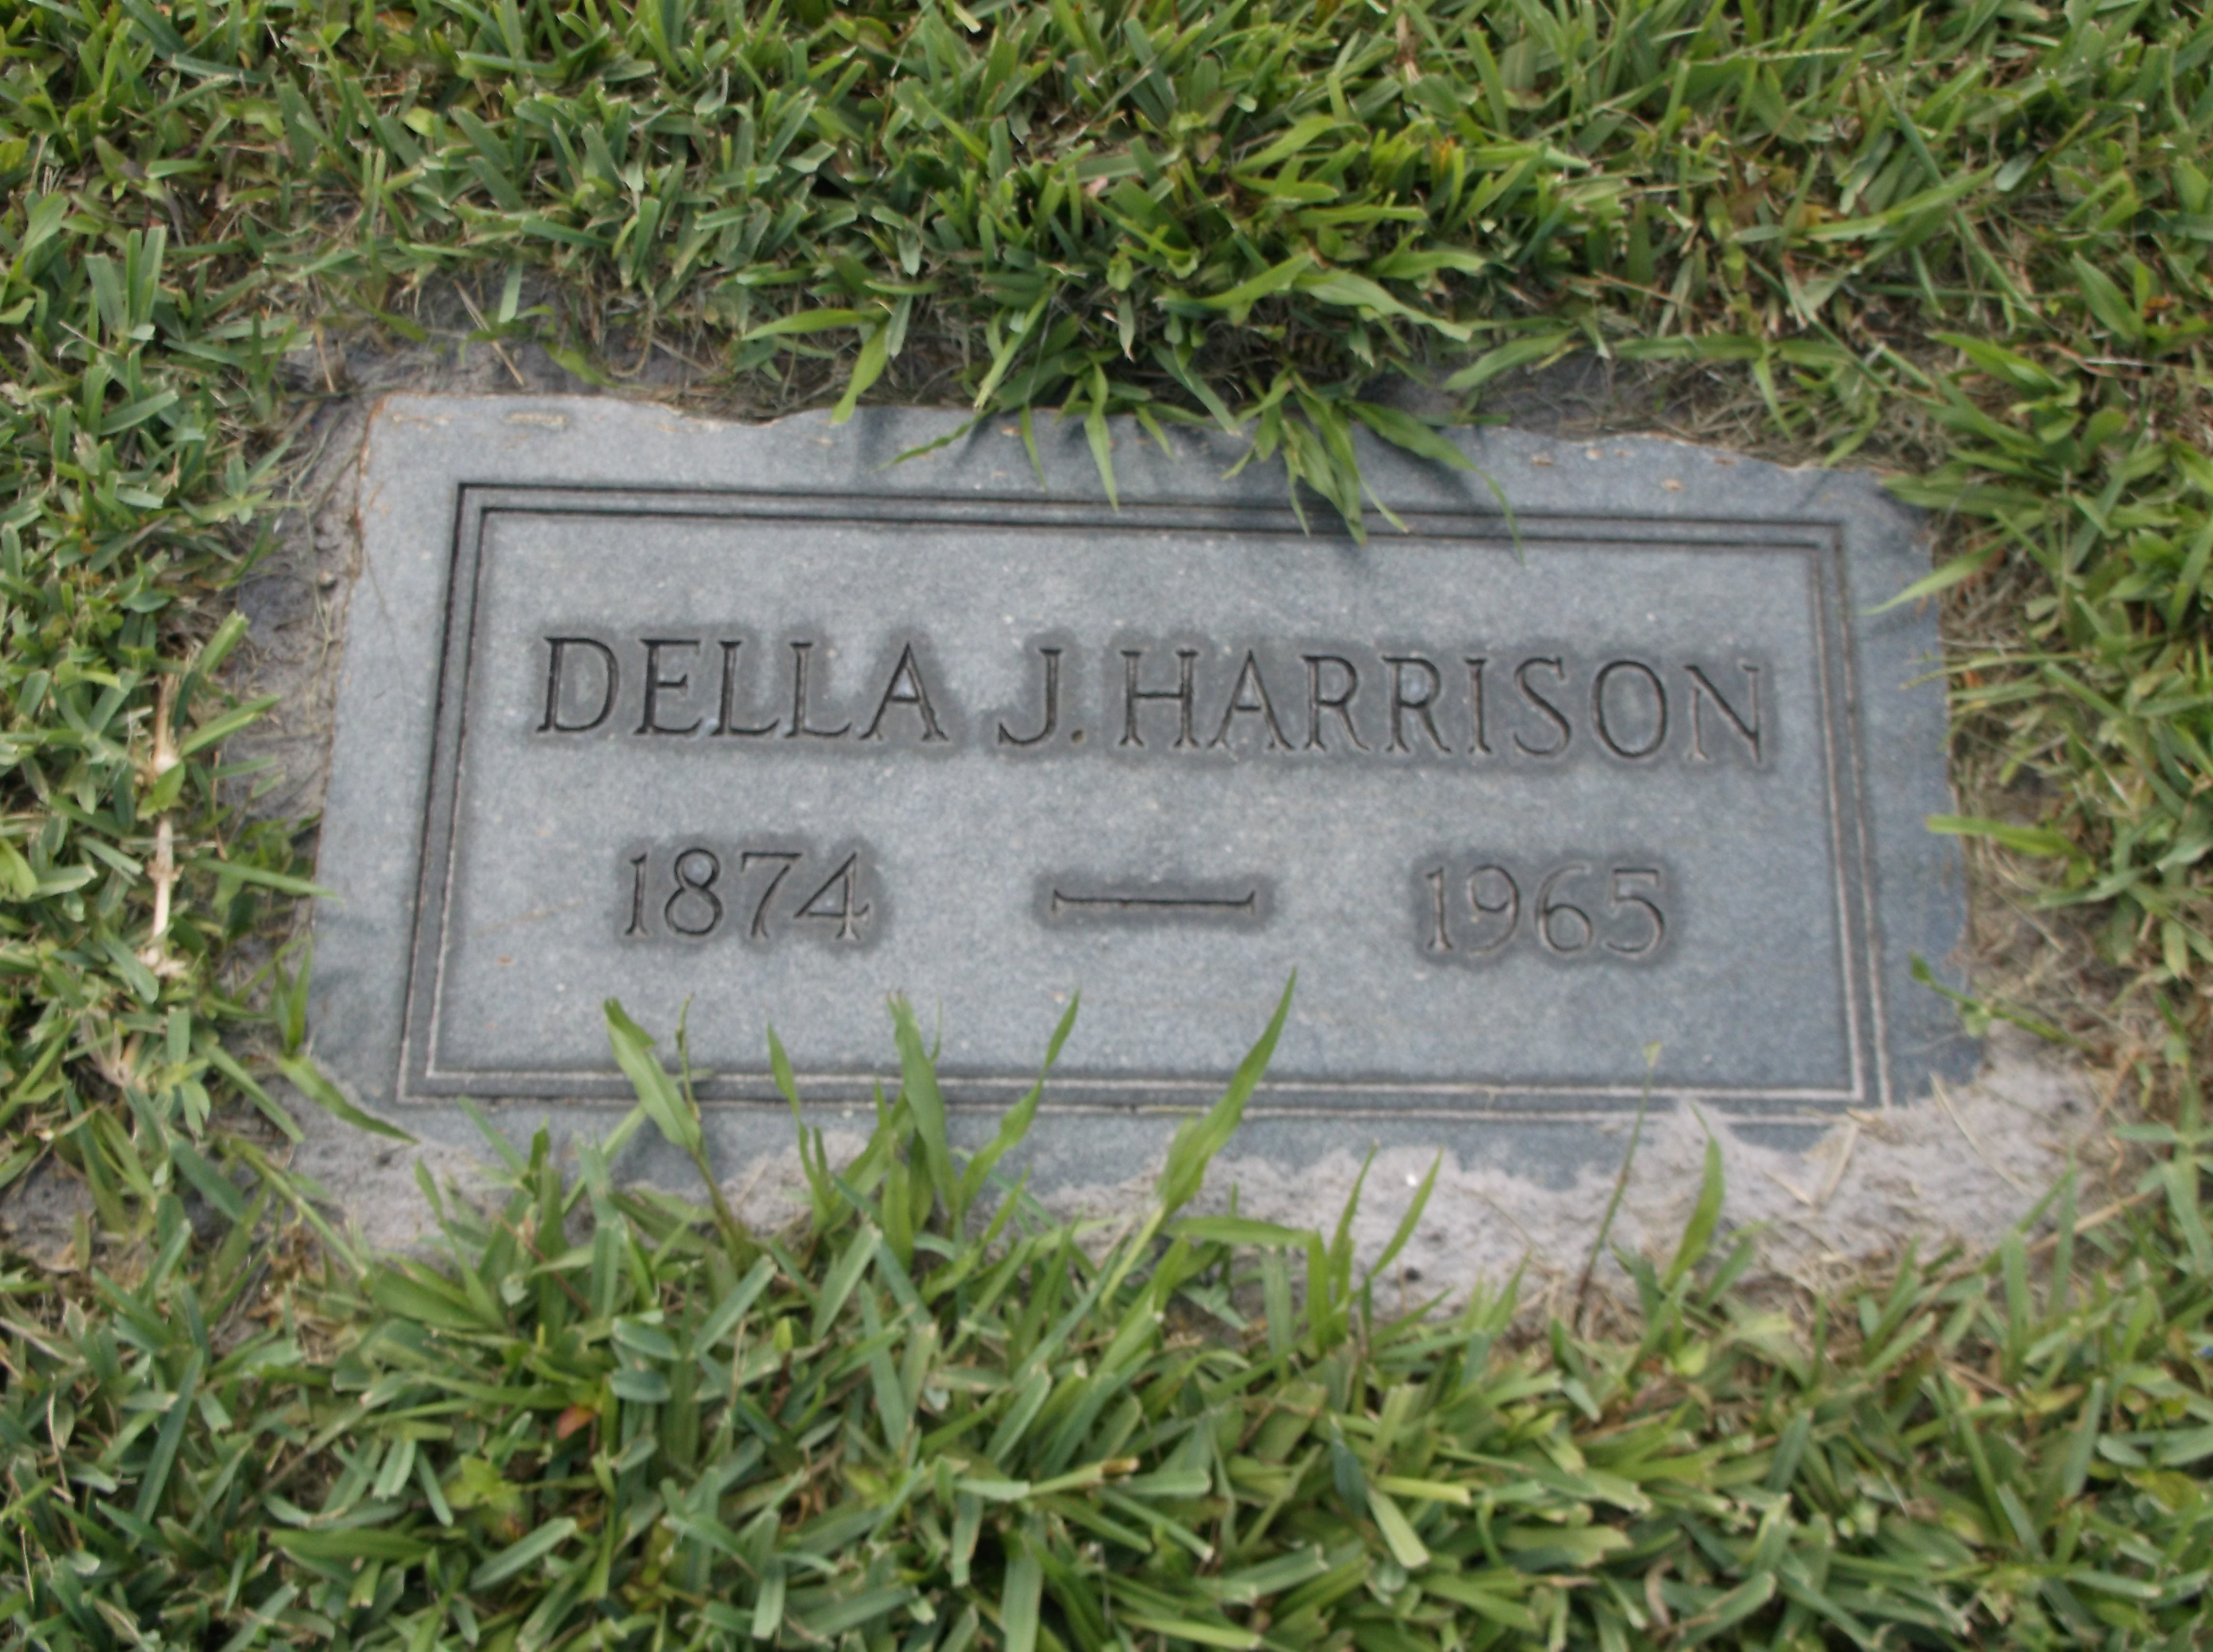 Della J Harrison